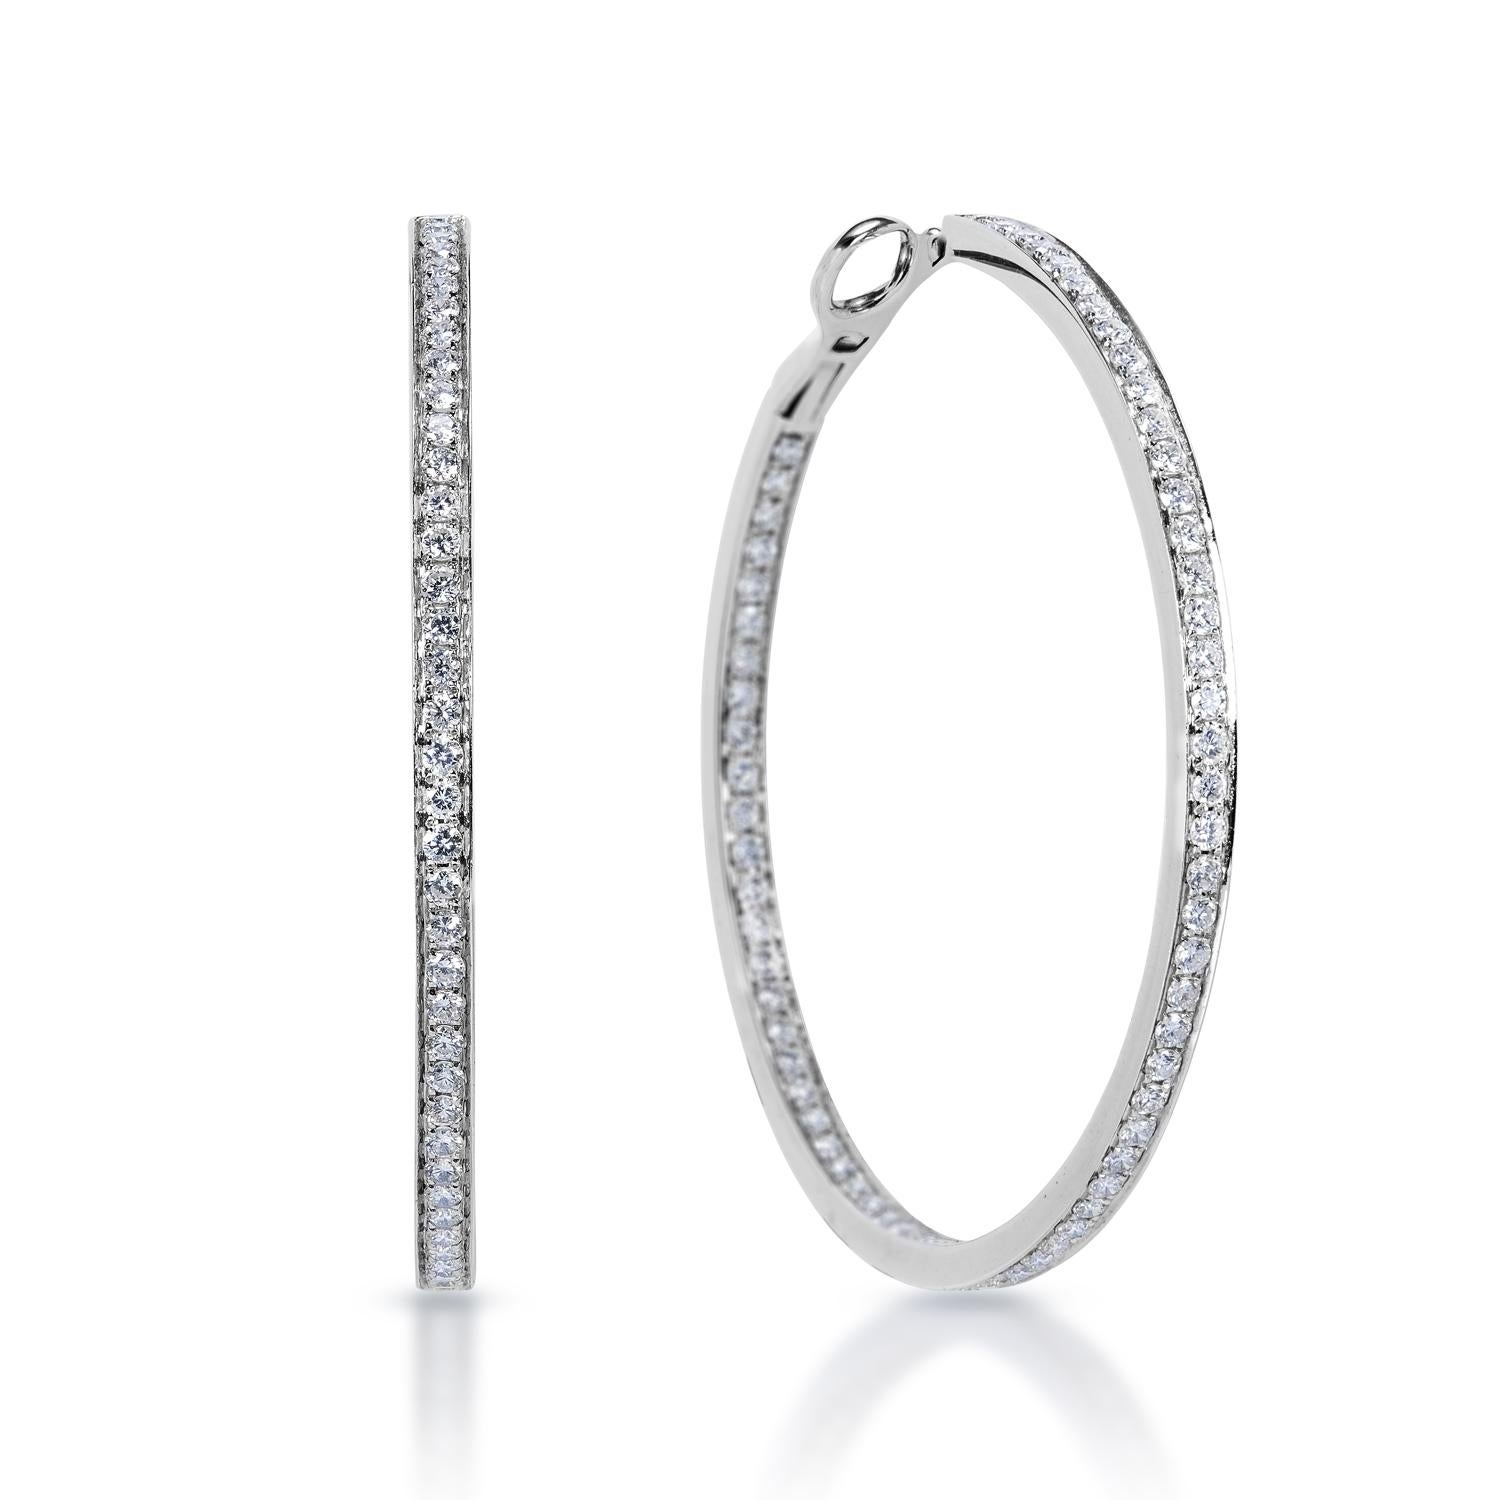 Diamond Hoop Earrings For Ladies:

Carat Weight: 2.48 Carats
Shape: Round Brilliant Cut
Metal: 14Karat White Gold 12.95 Grams
Style: Hoop Earrings